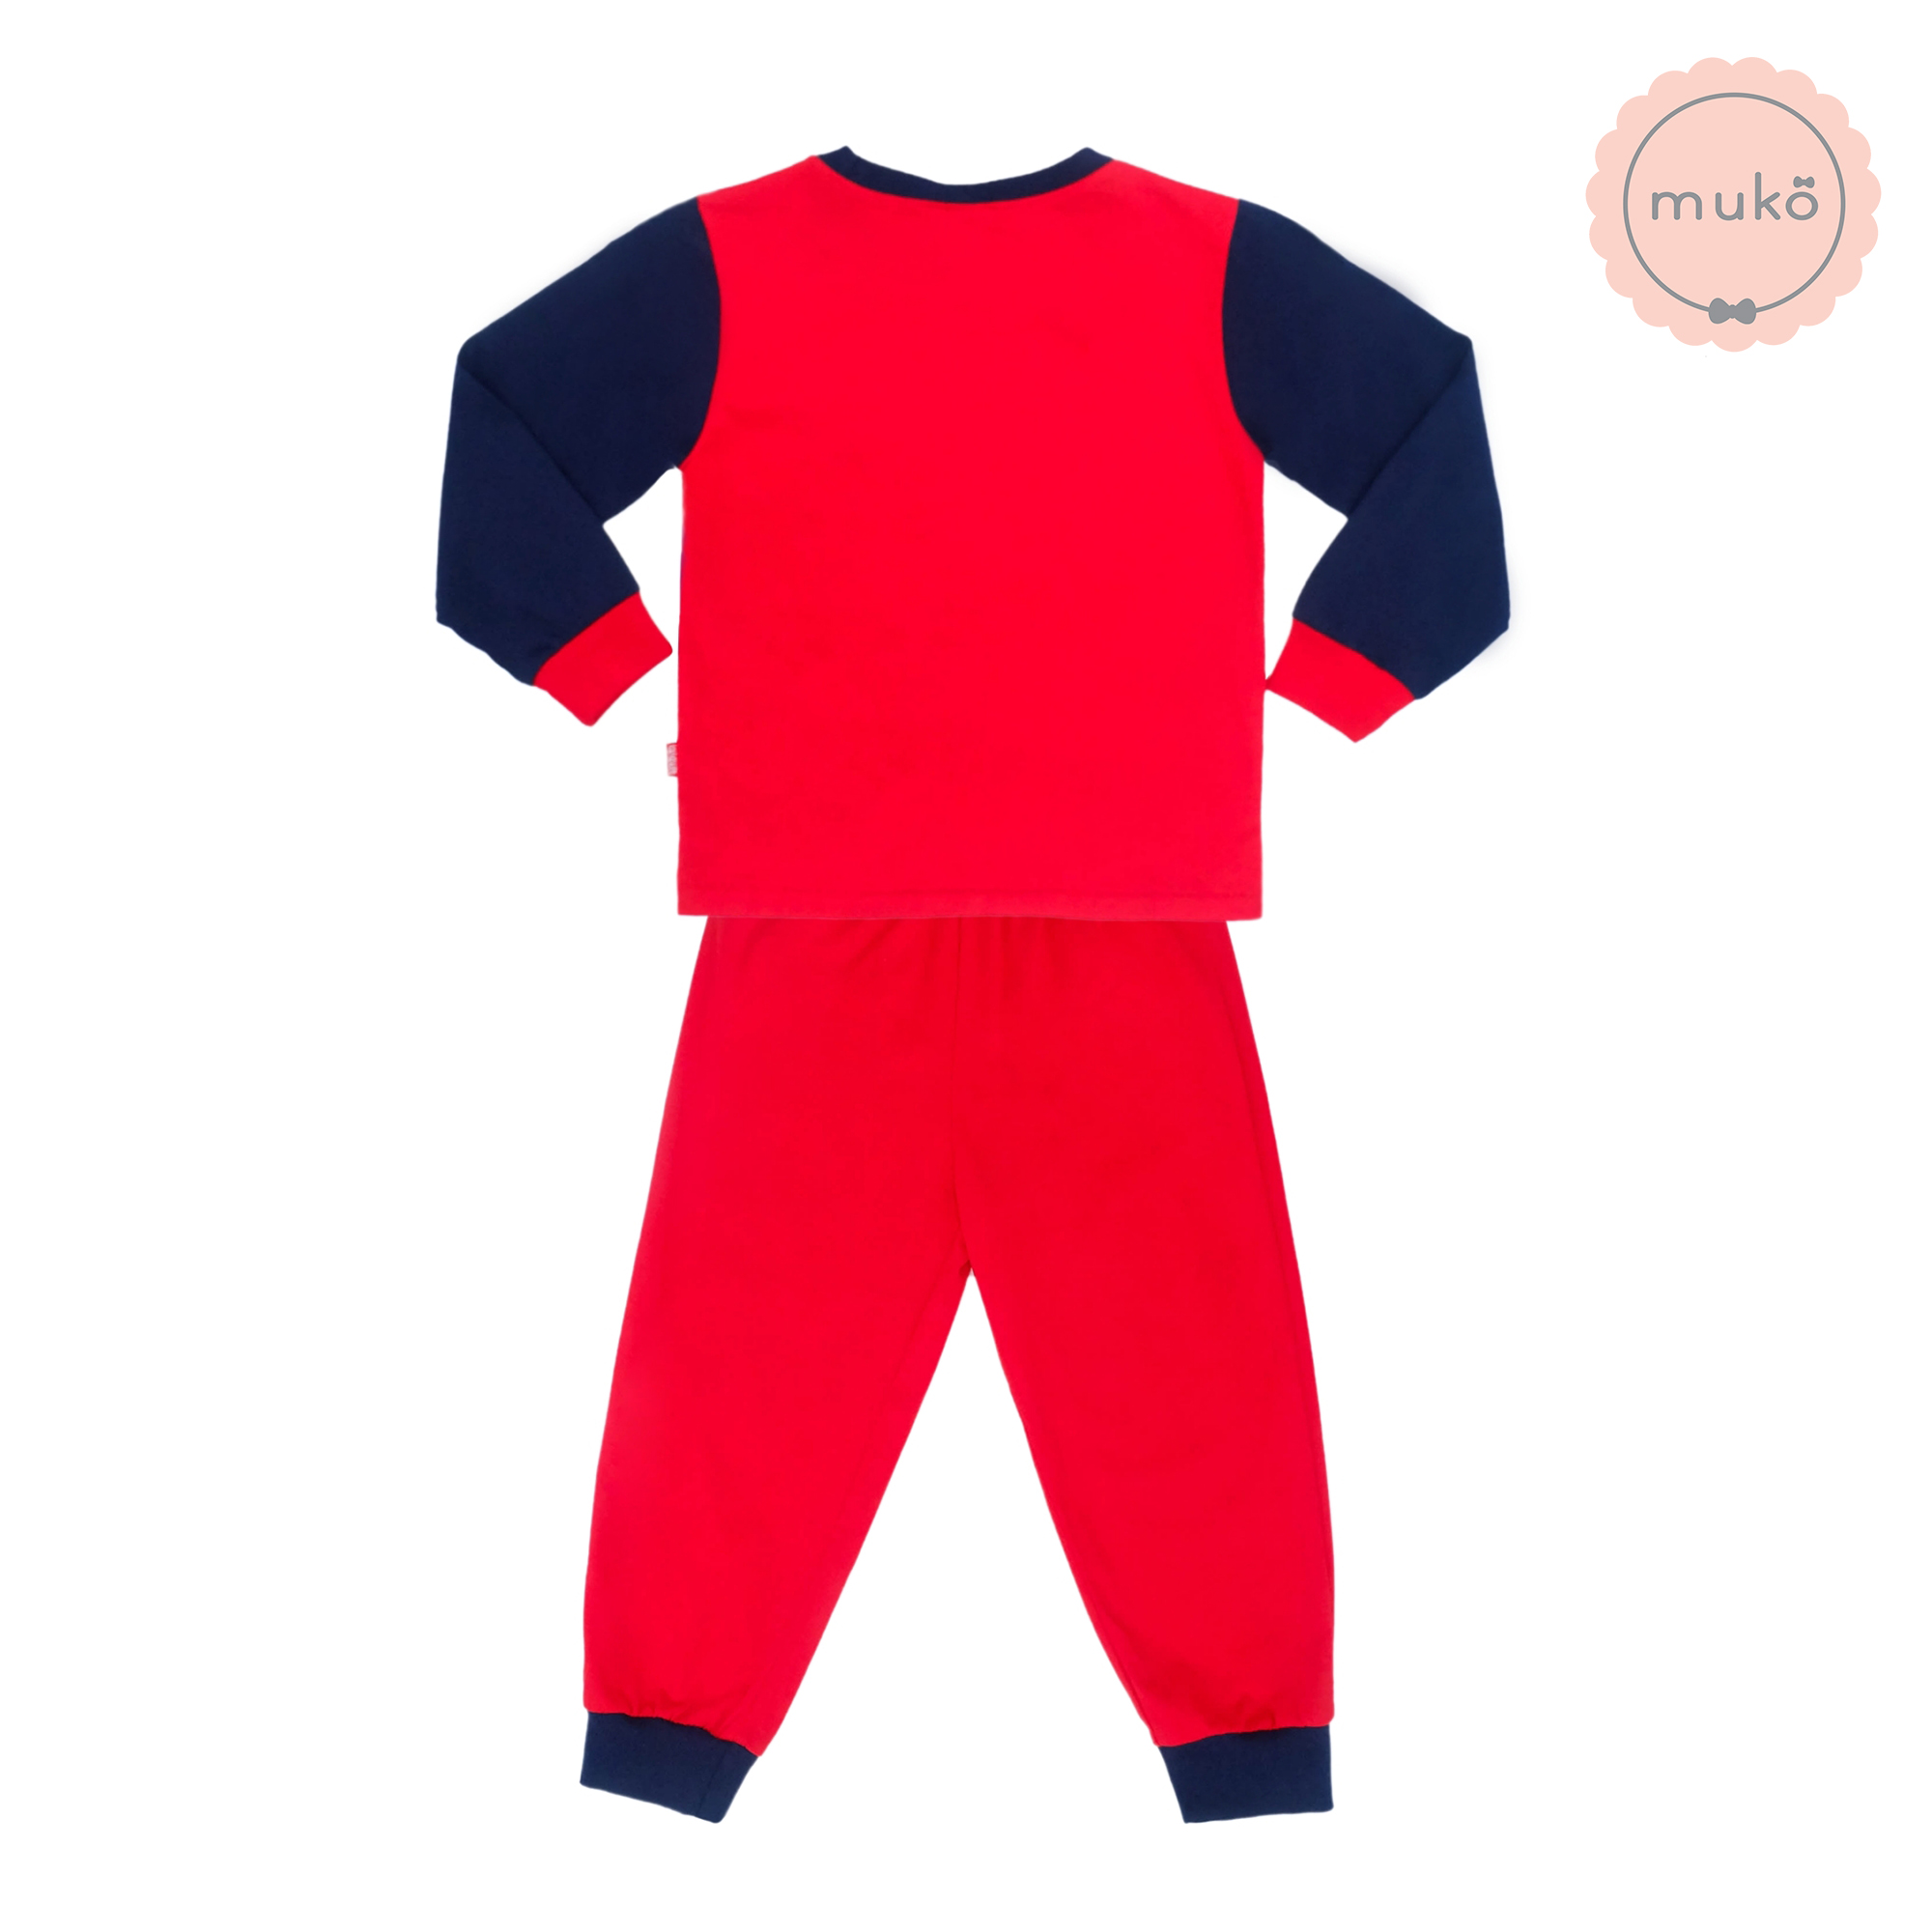 ชุดเด็ก 6 เดือน - 1 ขวบ แขนยาว-ขายาว (Size 1) DMS127-04-3-Red 1 ลาย สไปร์เดอร์แมน Spiderman สีแดง